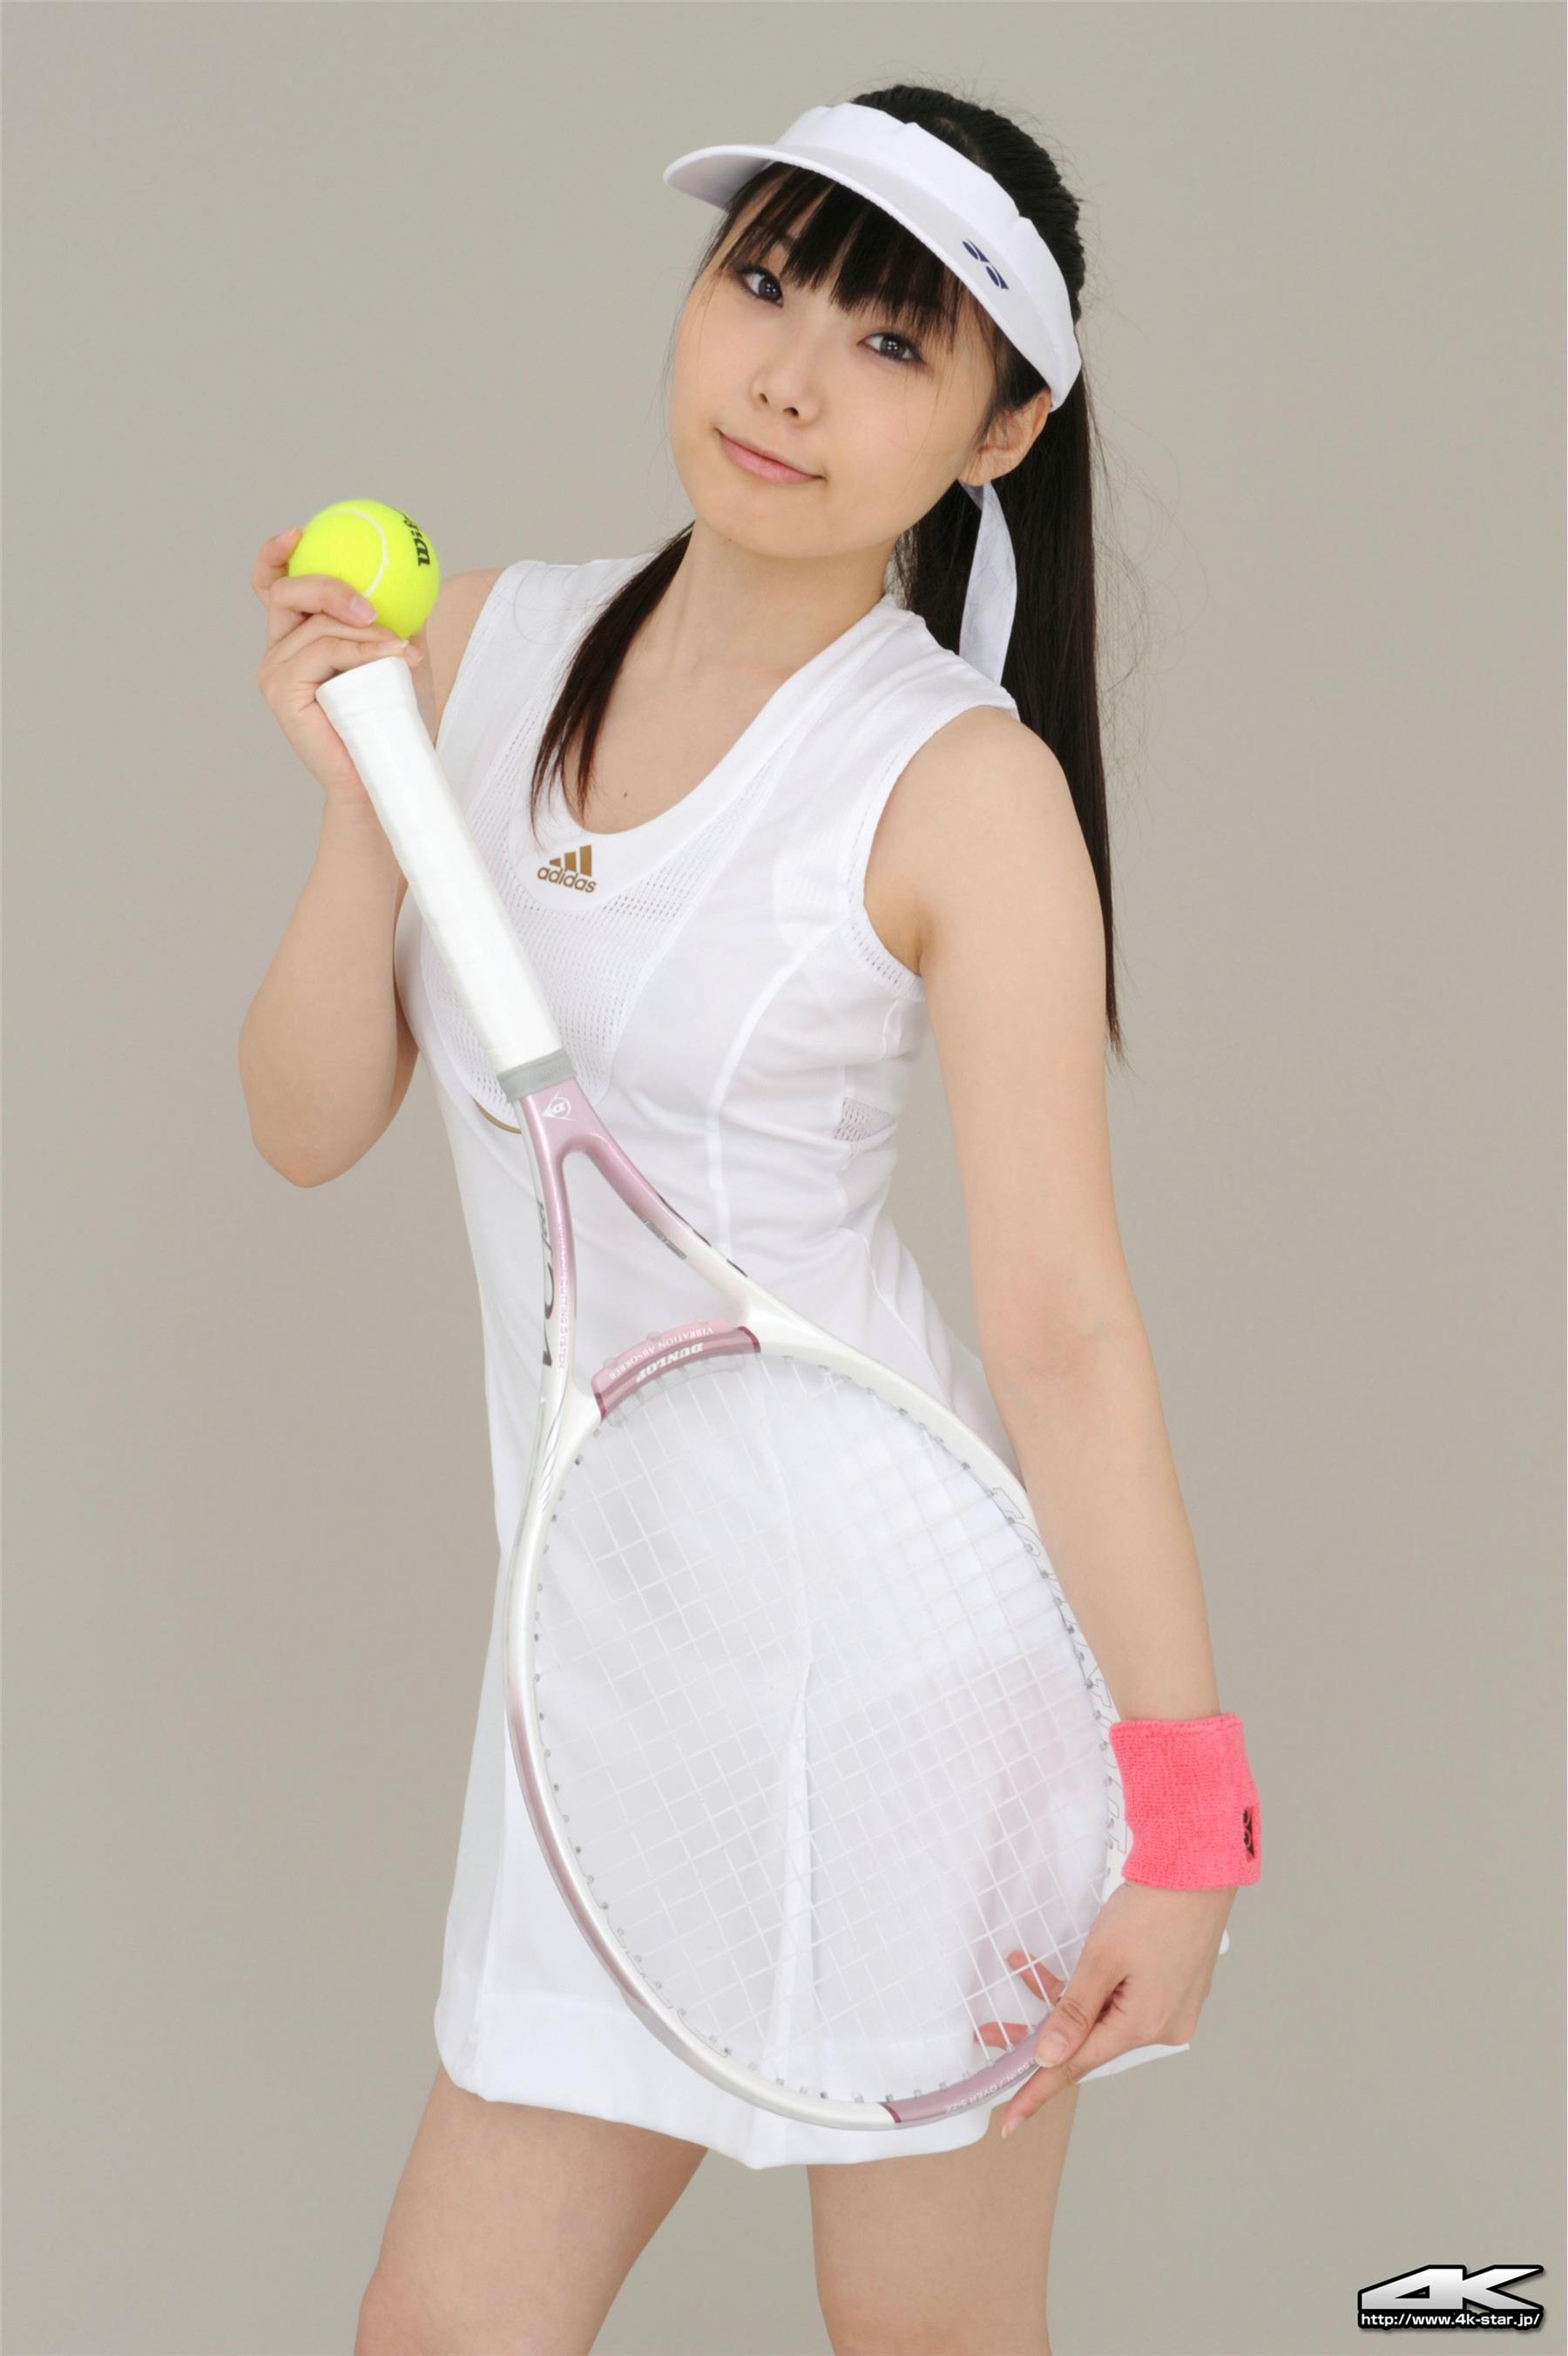 4K-STAR NO.886 Asuka Karuizawa tennis club 2  - 10.jpg